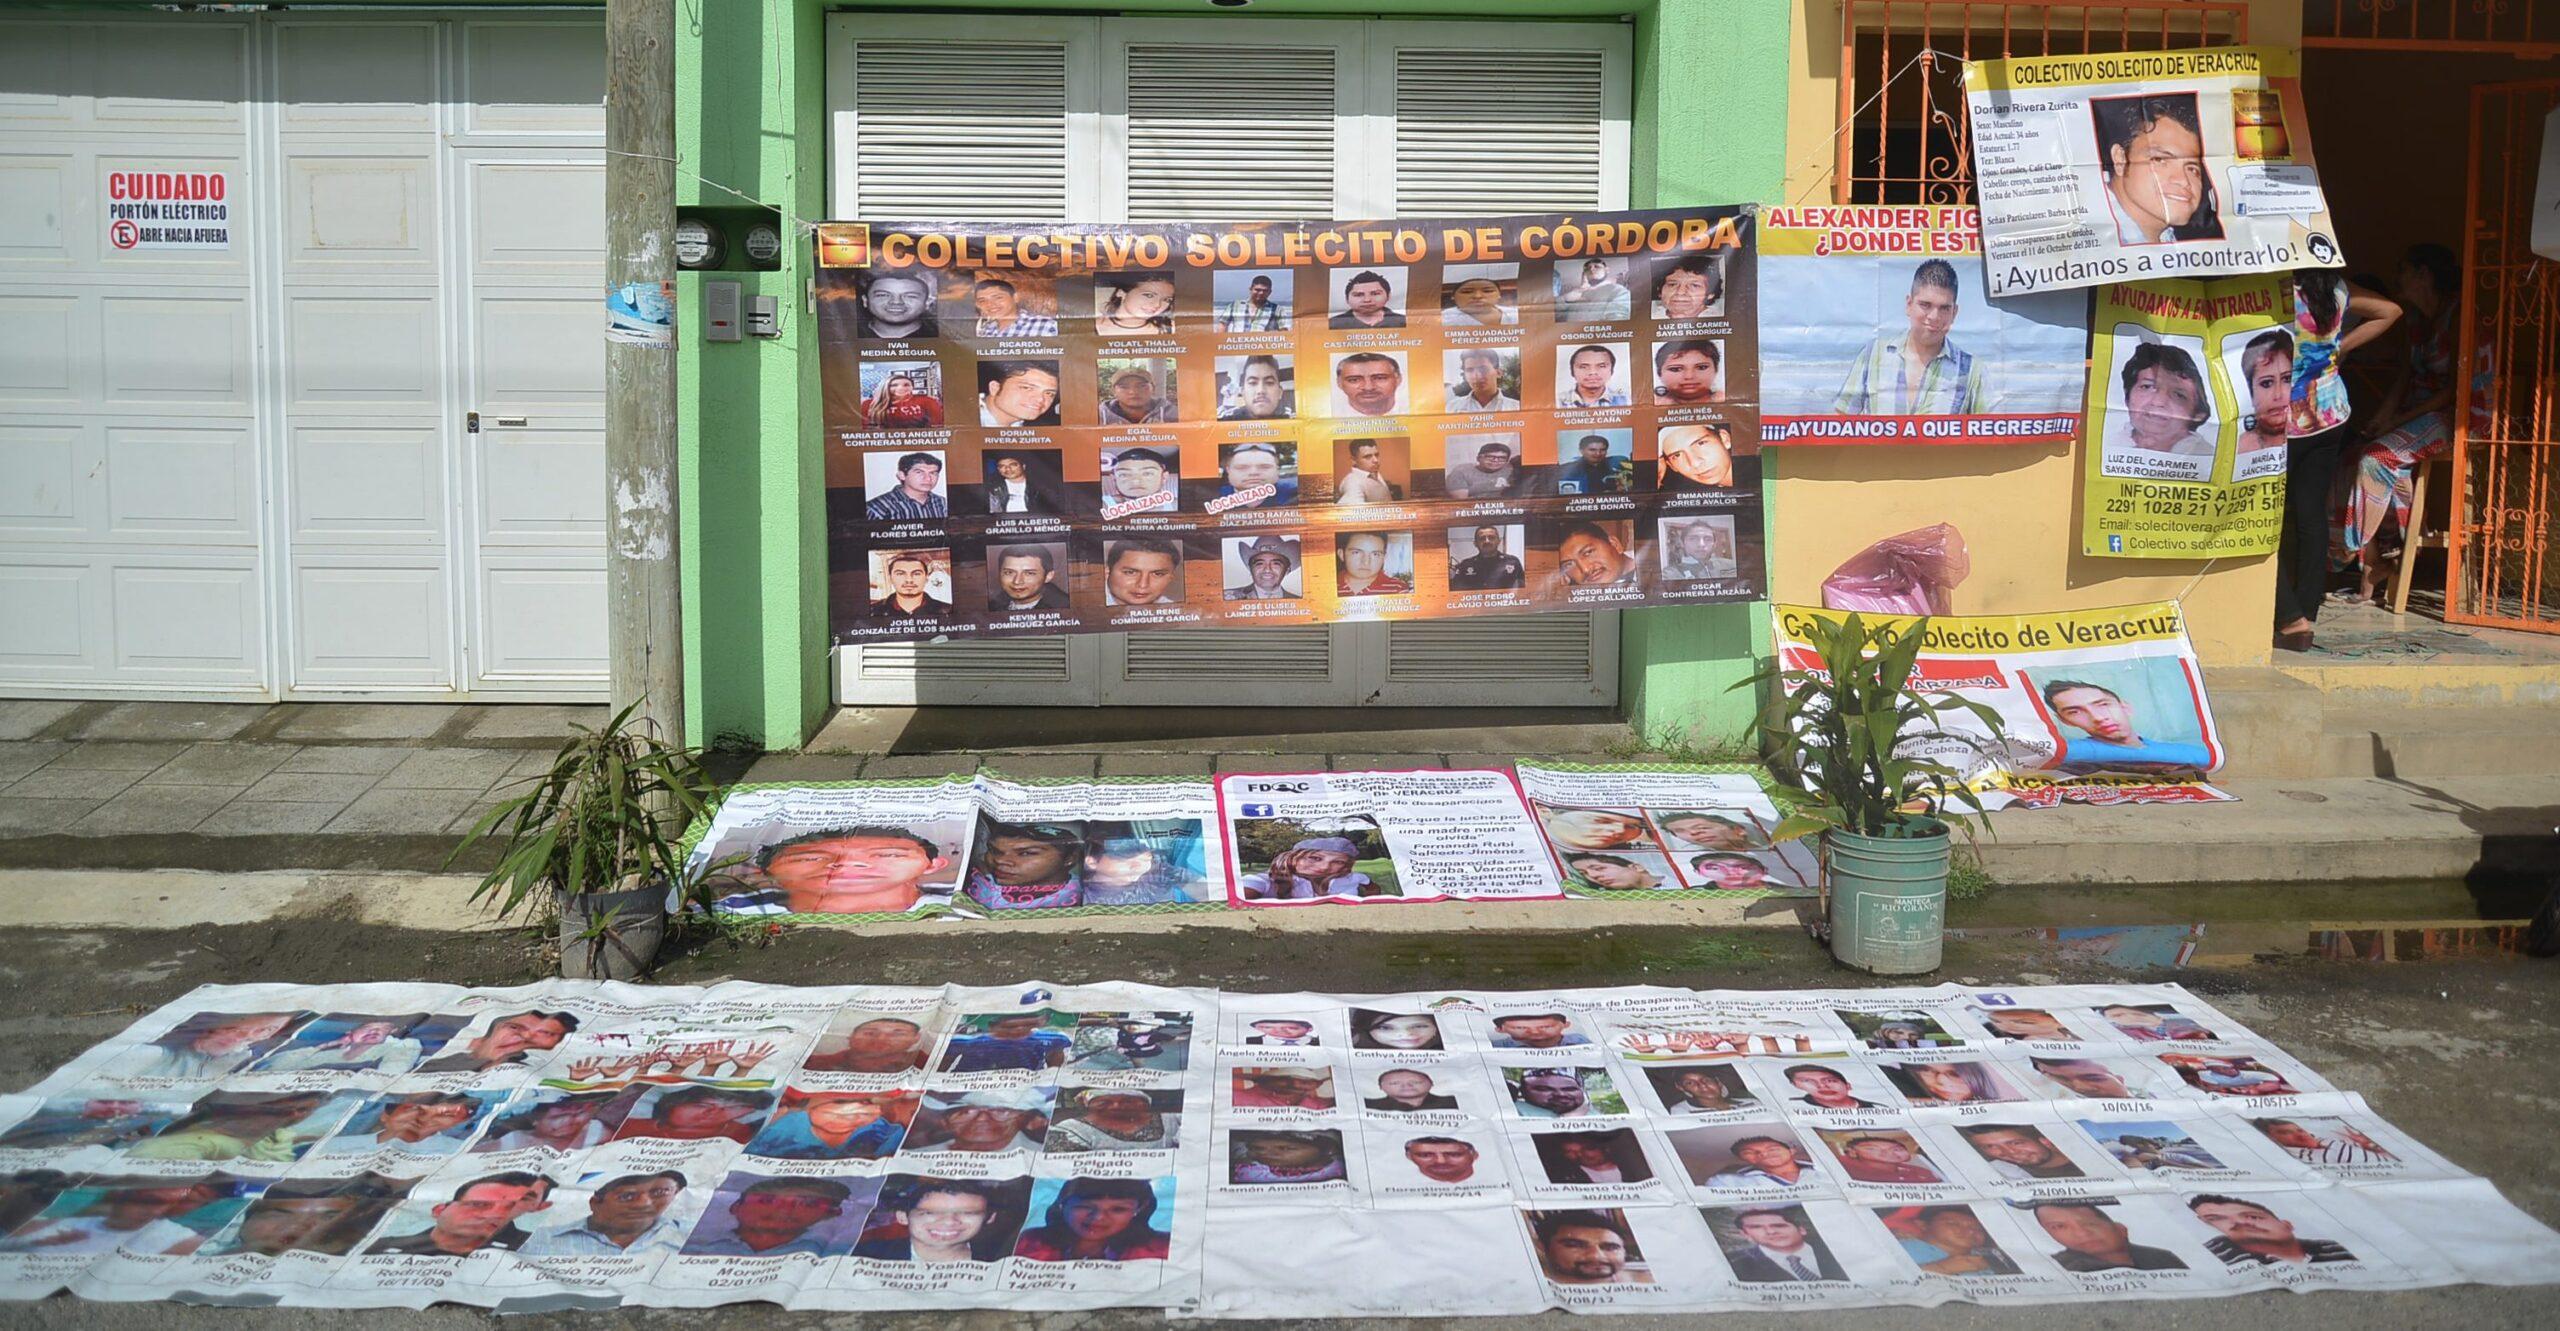 44% de quejas por desaparición en Veracruz, presuntamente cometidas por autoridades: CNDH